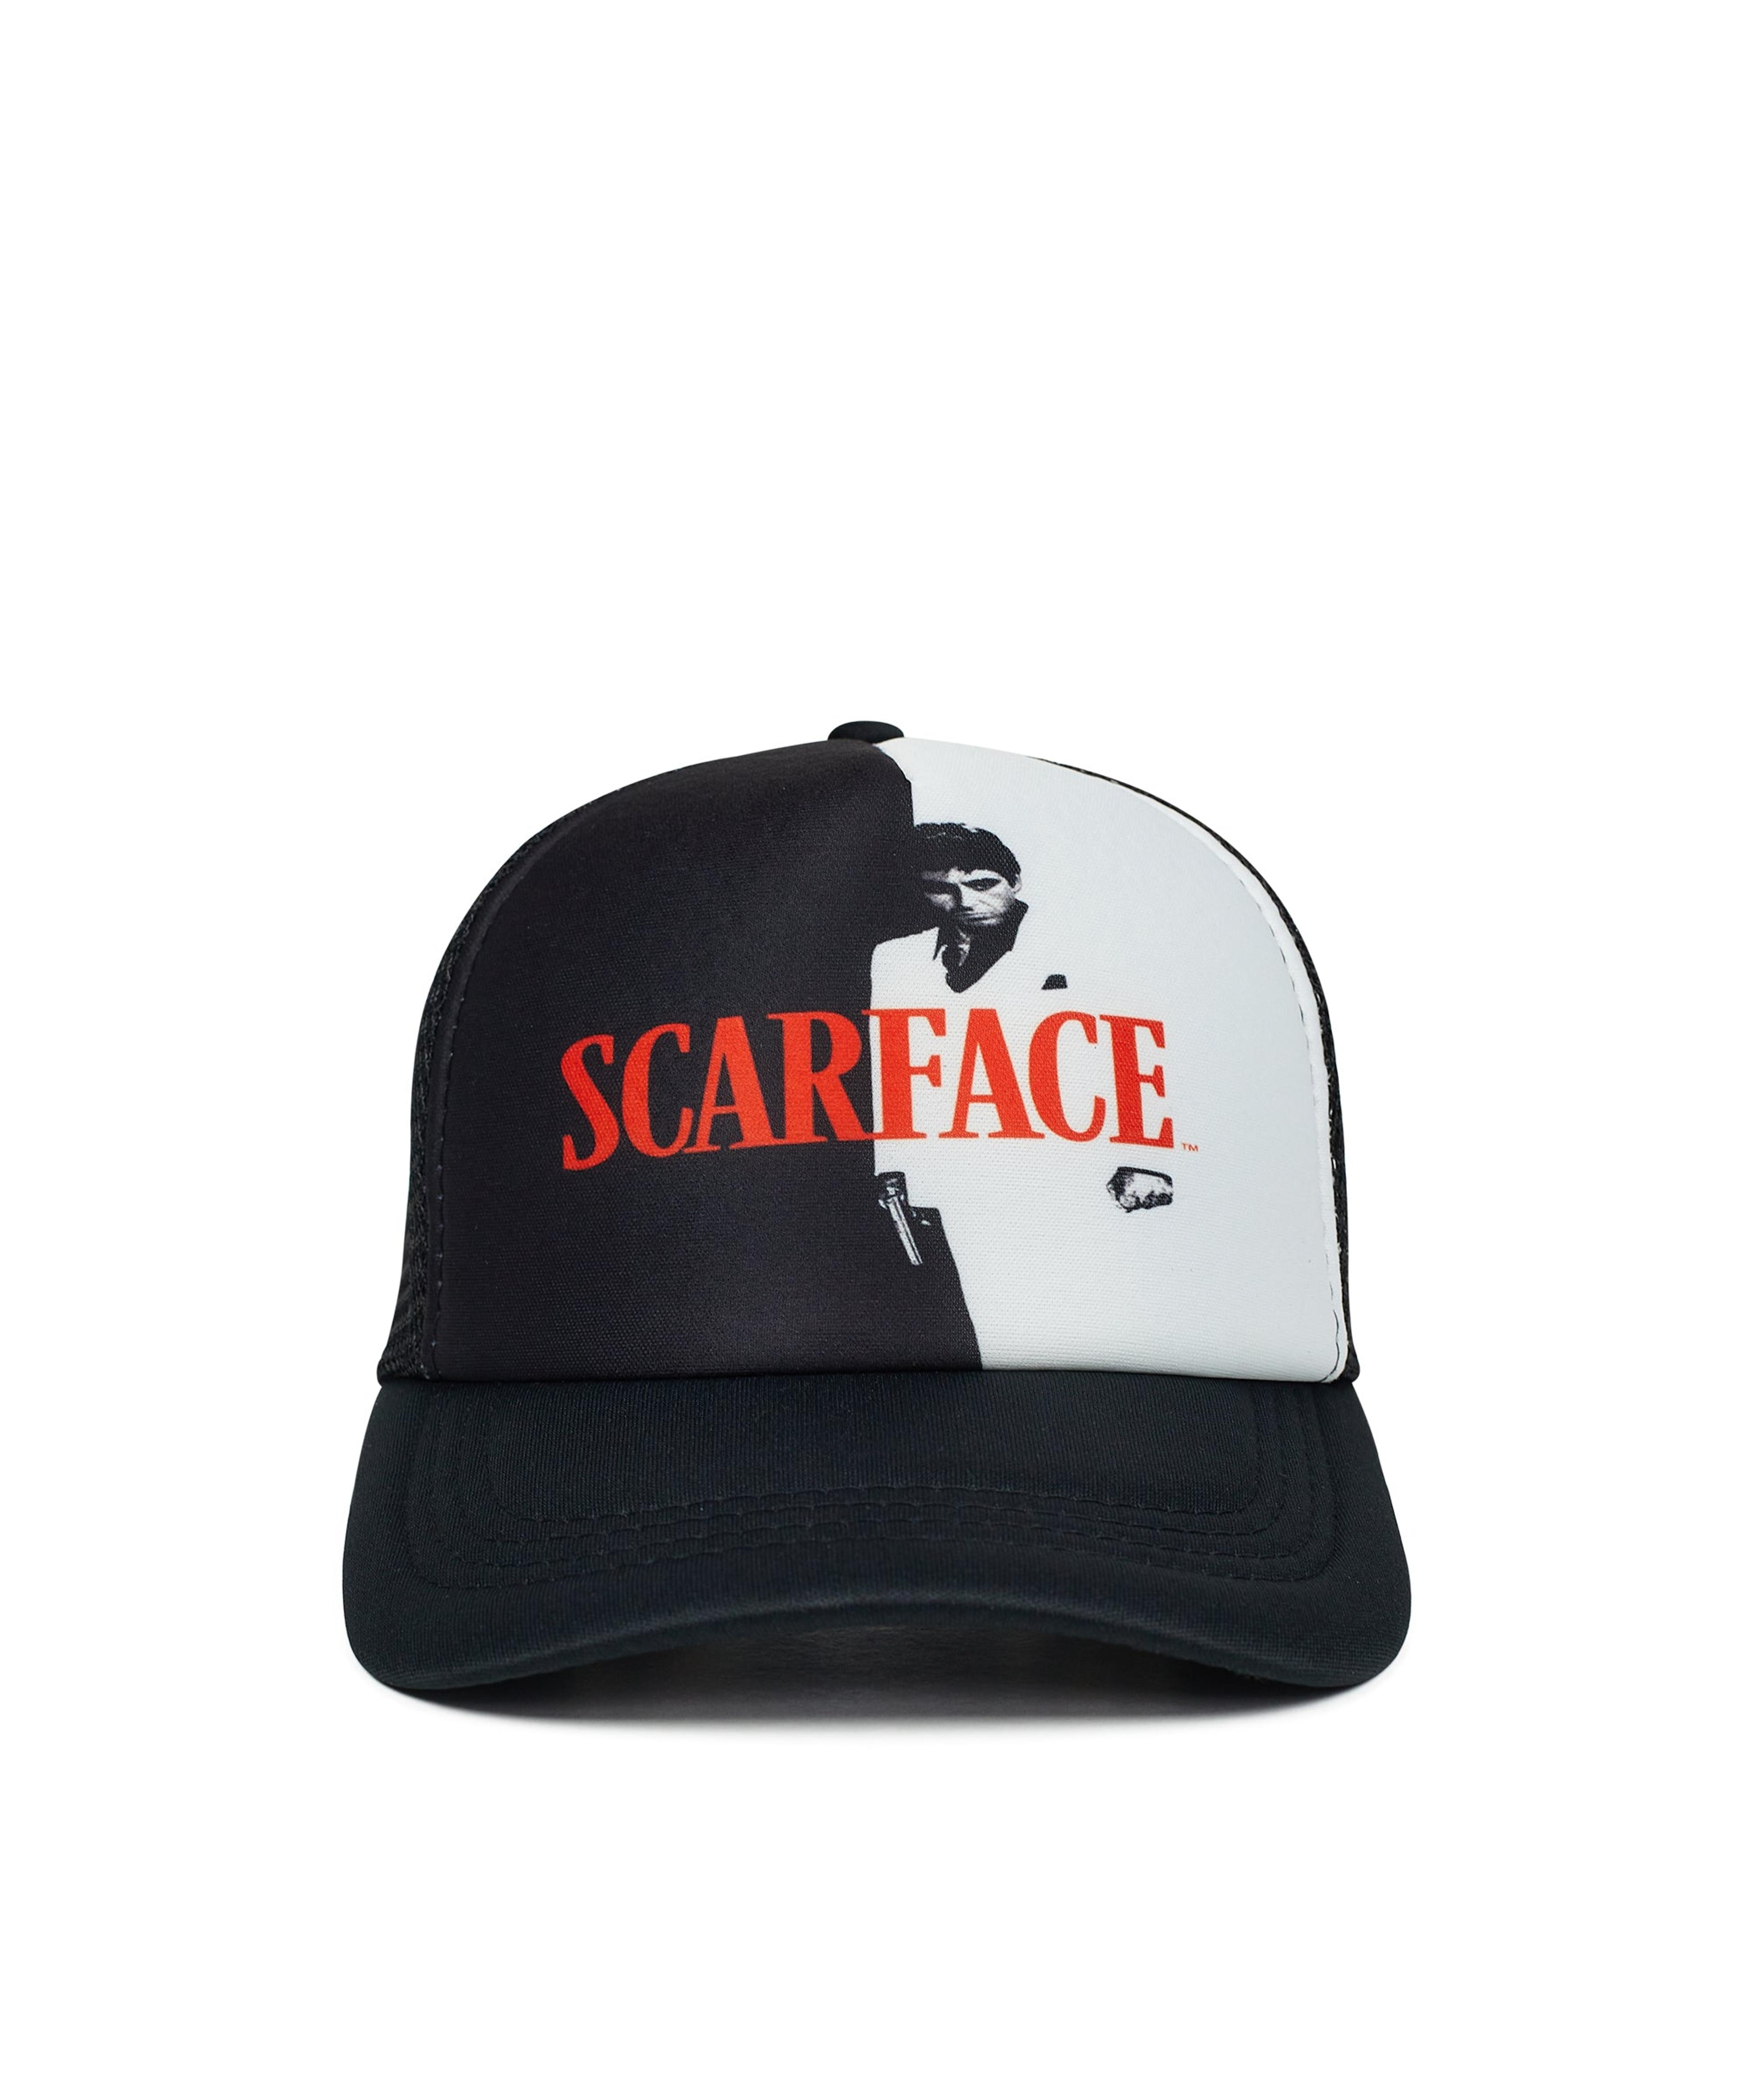 Scarface Trucker Hat